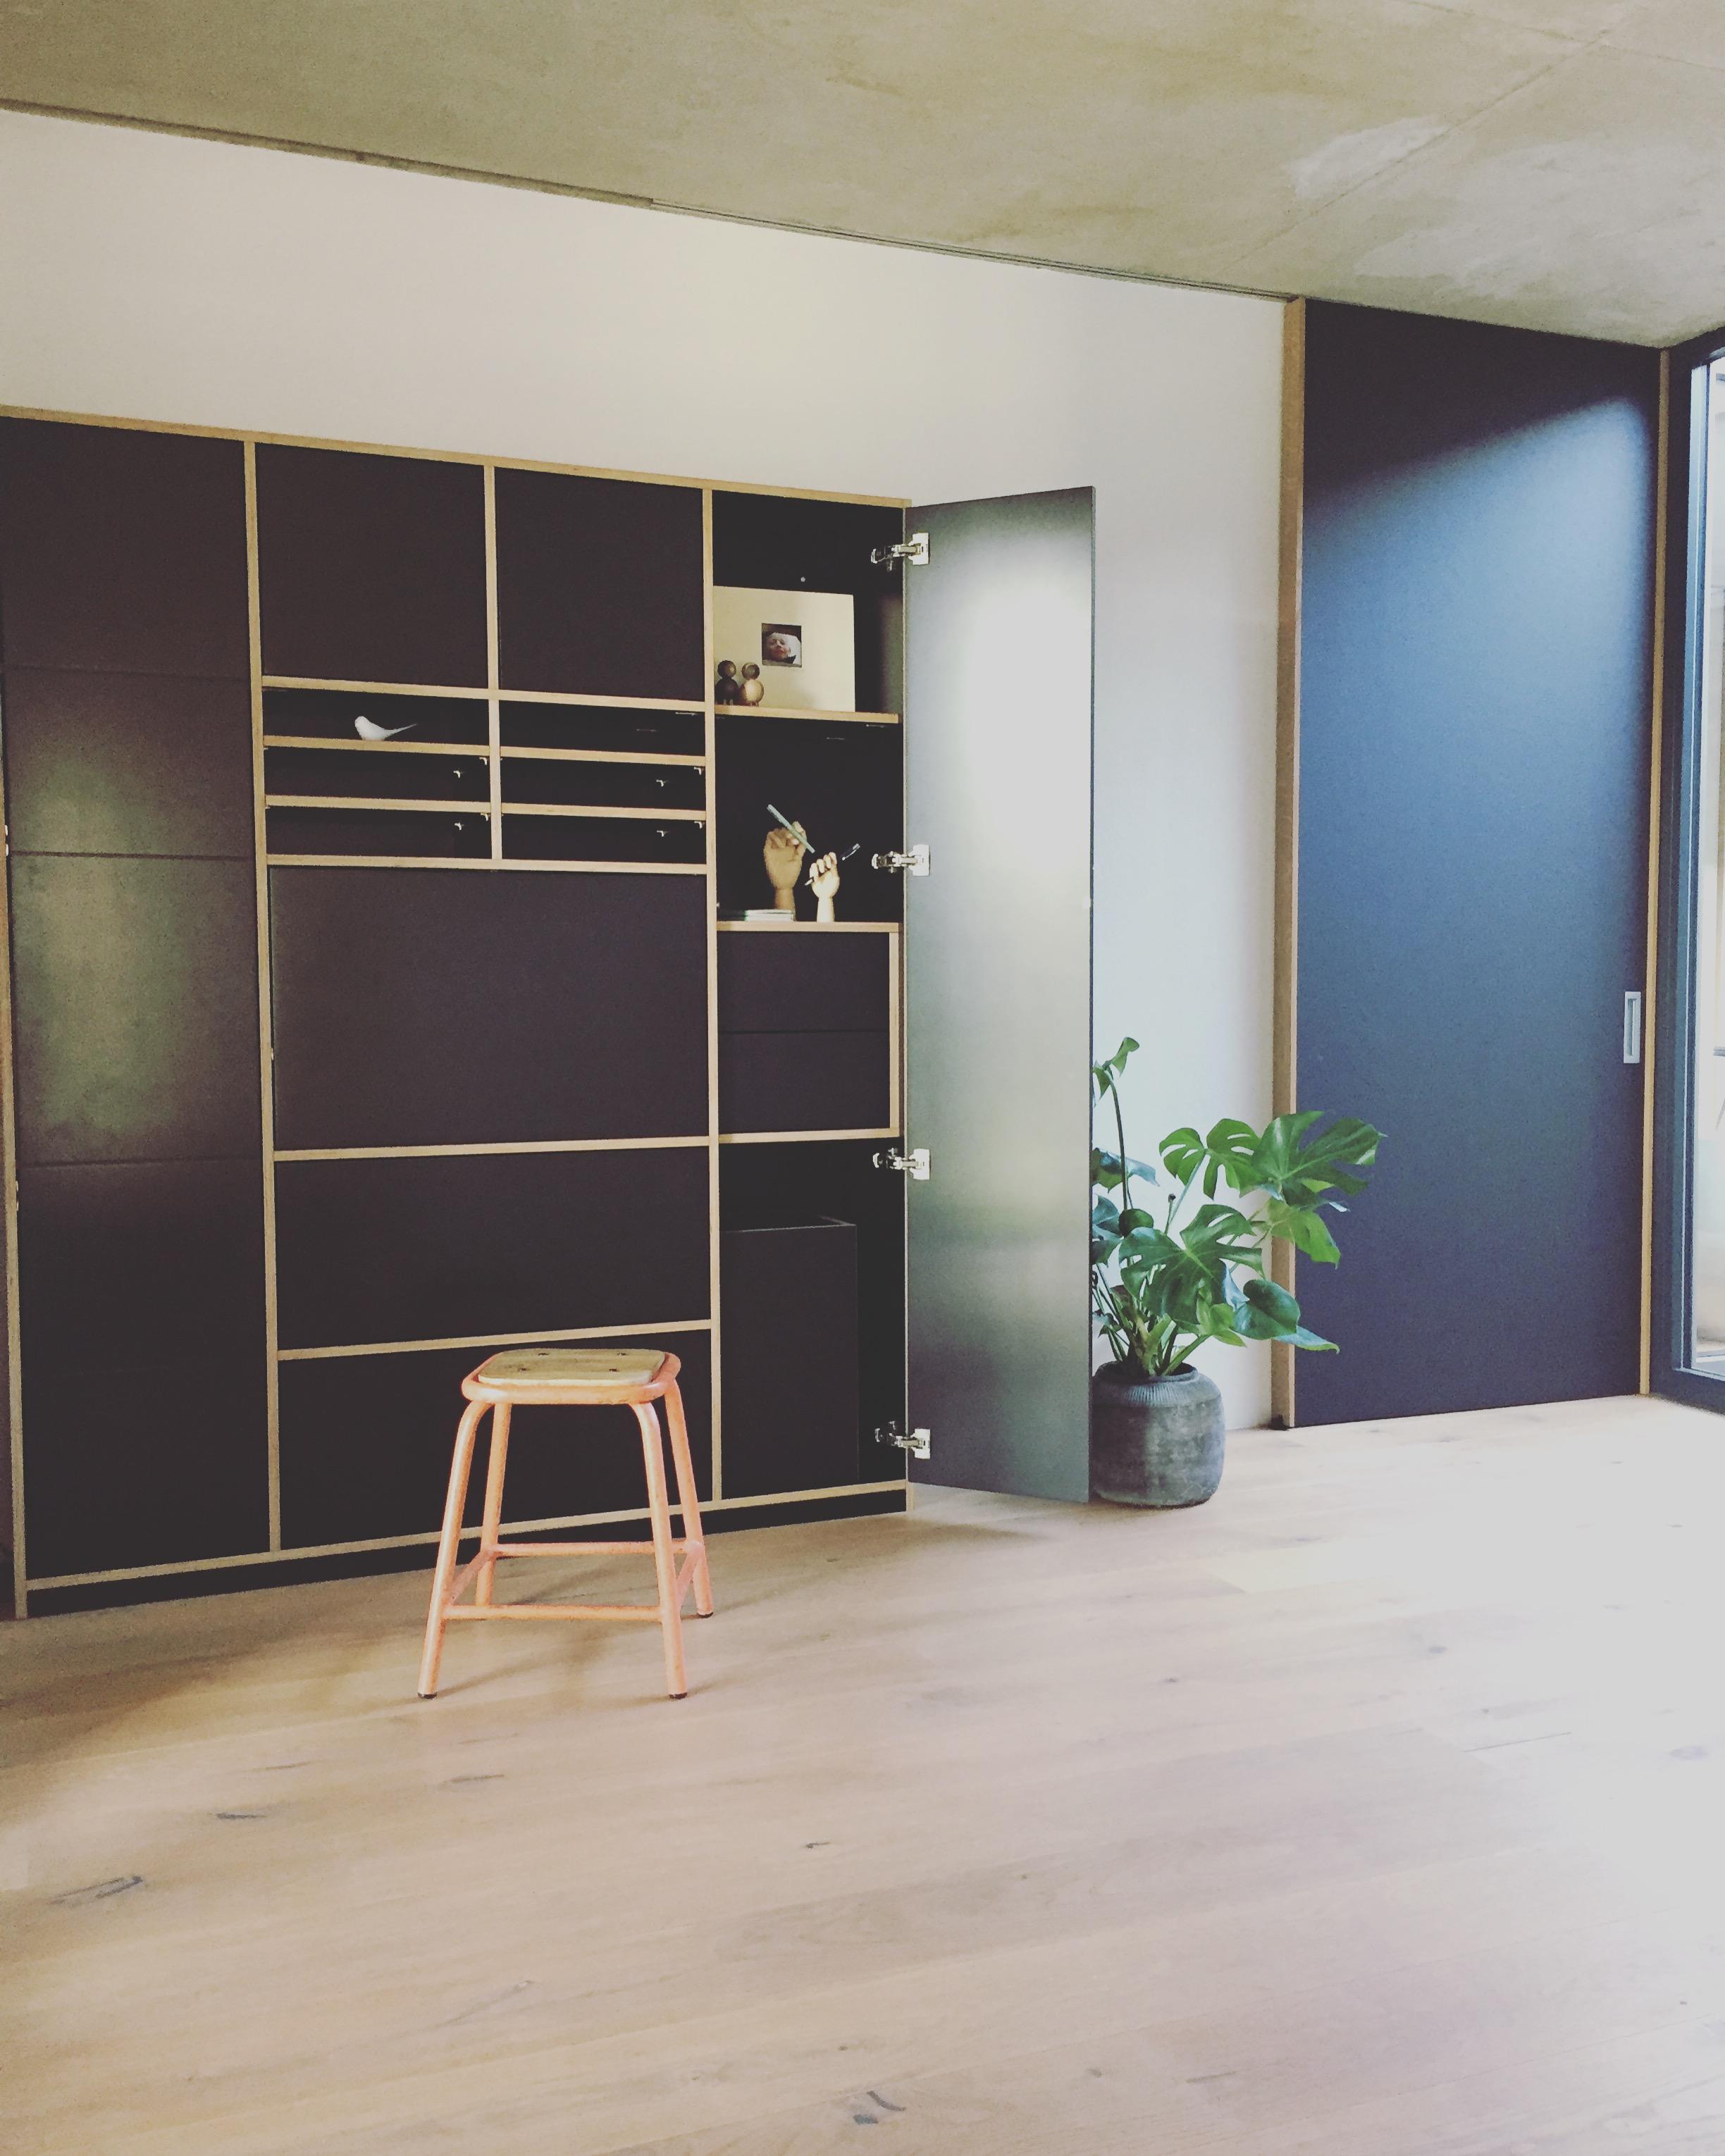 Unsere Aussicht vom Wohnzimmer ins Büro. Hygge kommt demnächst😁. #minimalistisch #multiplex #sekretär